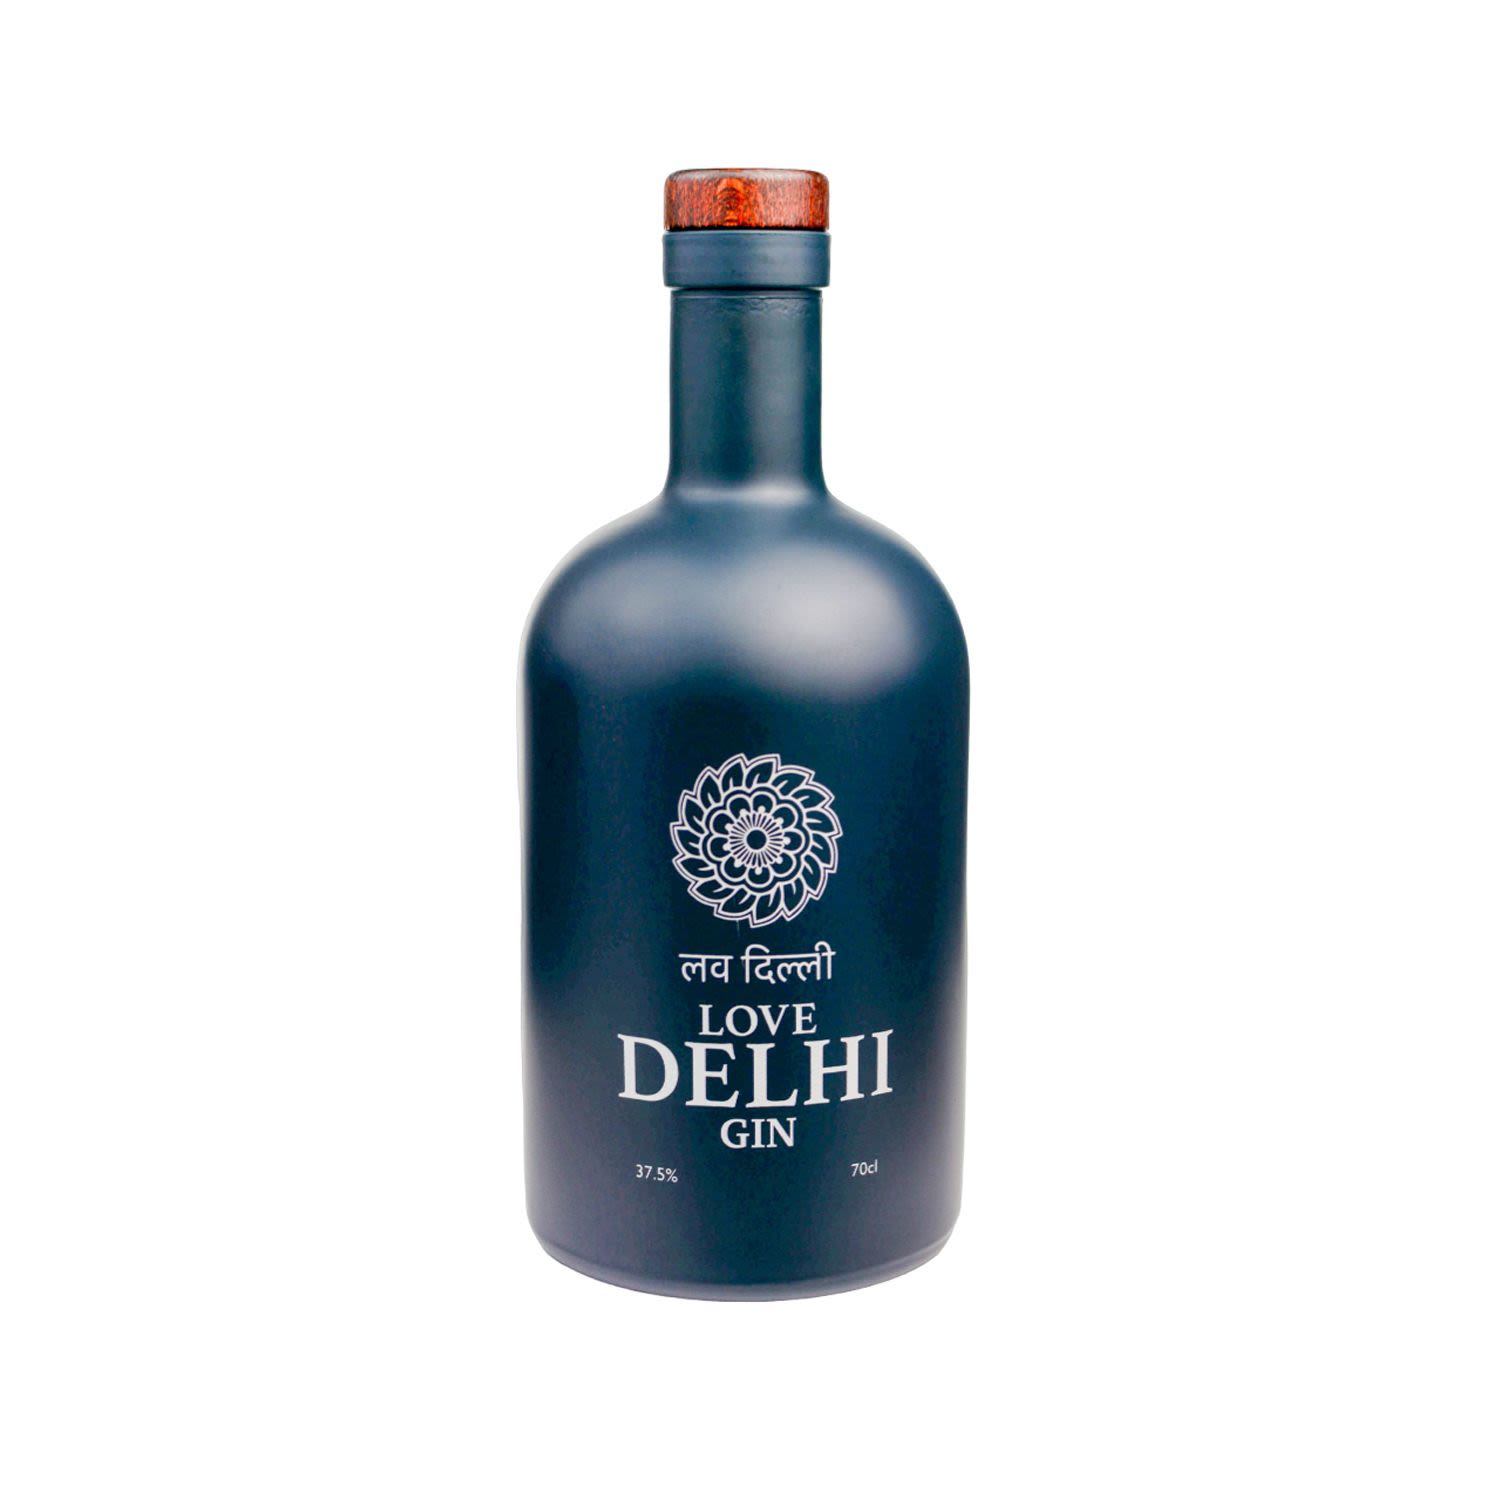 Love Delhi Gin 700mL Bottle